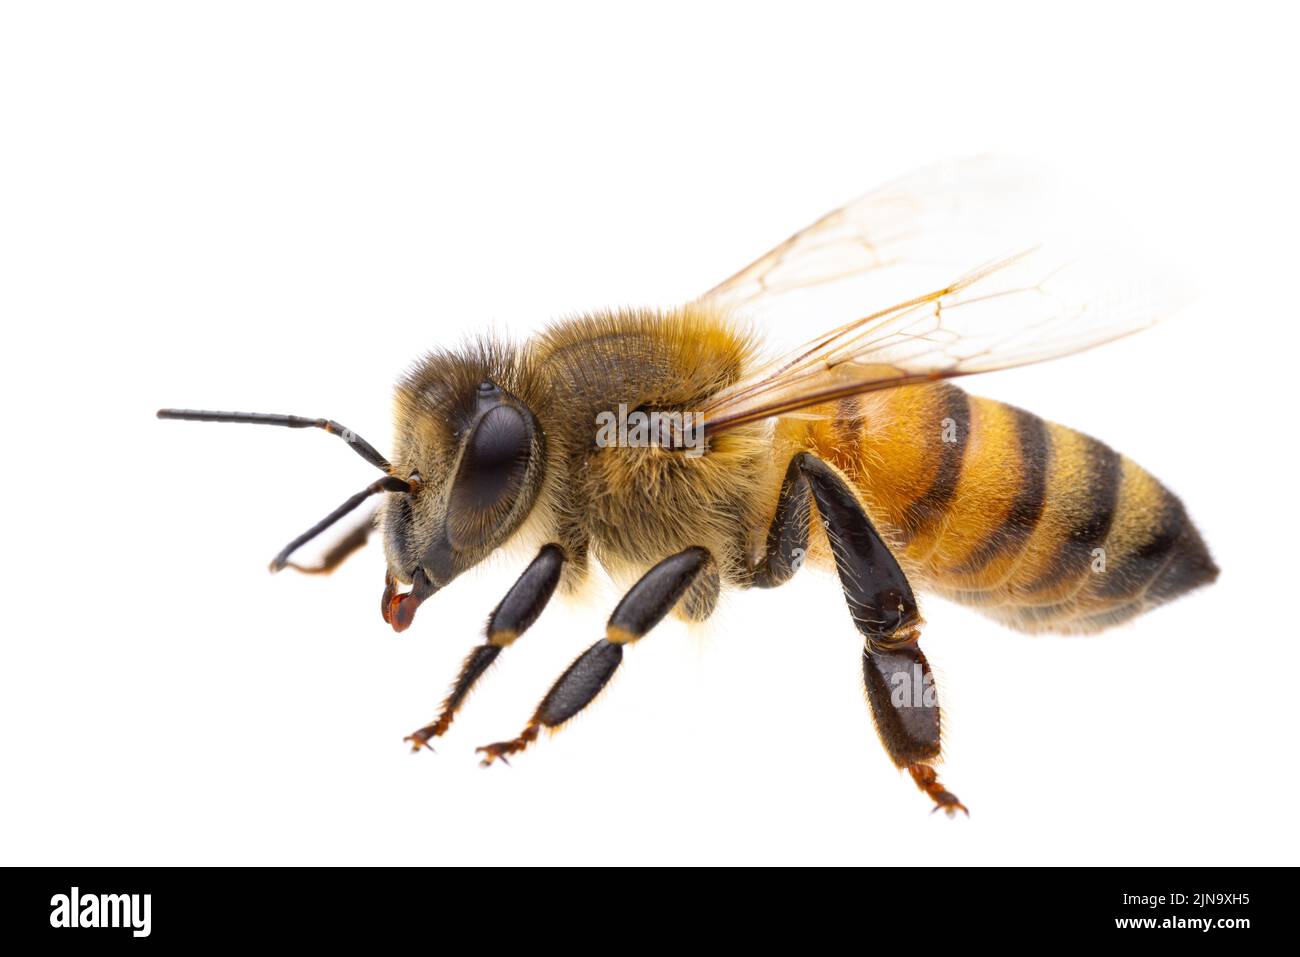 Insectes d'europe - abeilles: Vue latérale macro de l'abeille européenne ( APIs mellifera) isolée sur fond blanc - détail de la tête Banque D'Images